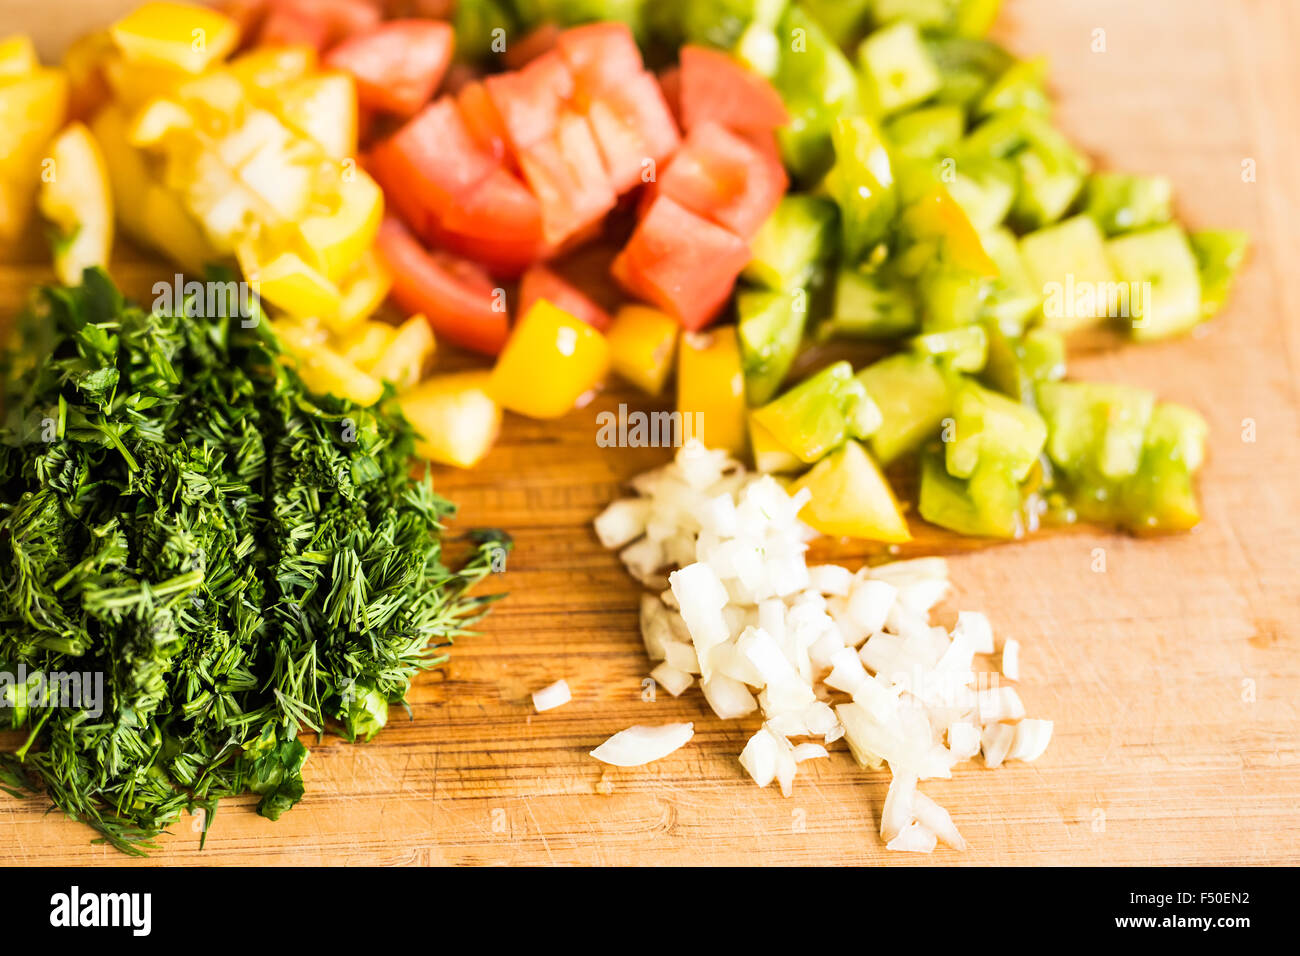 Les légumes frais, haché sur une planche à découper Banque D'Images